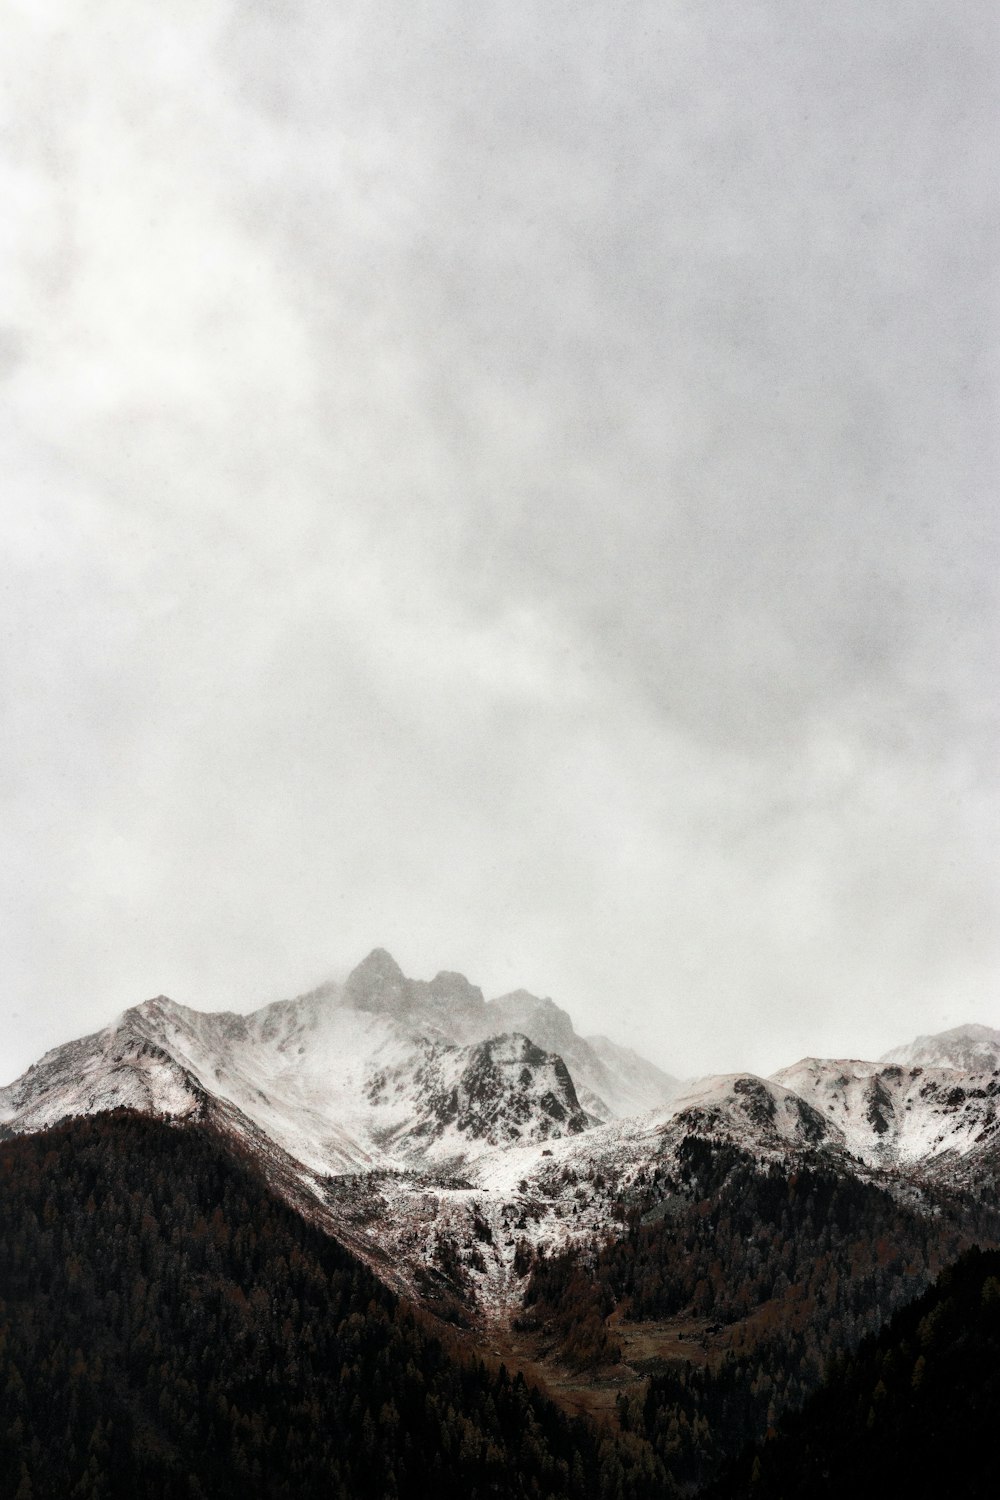 montagna ghiacciata del cappuccio sotto il cielo grigio durante la fotografia diurna